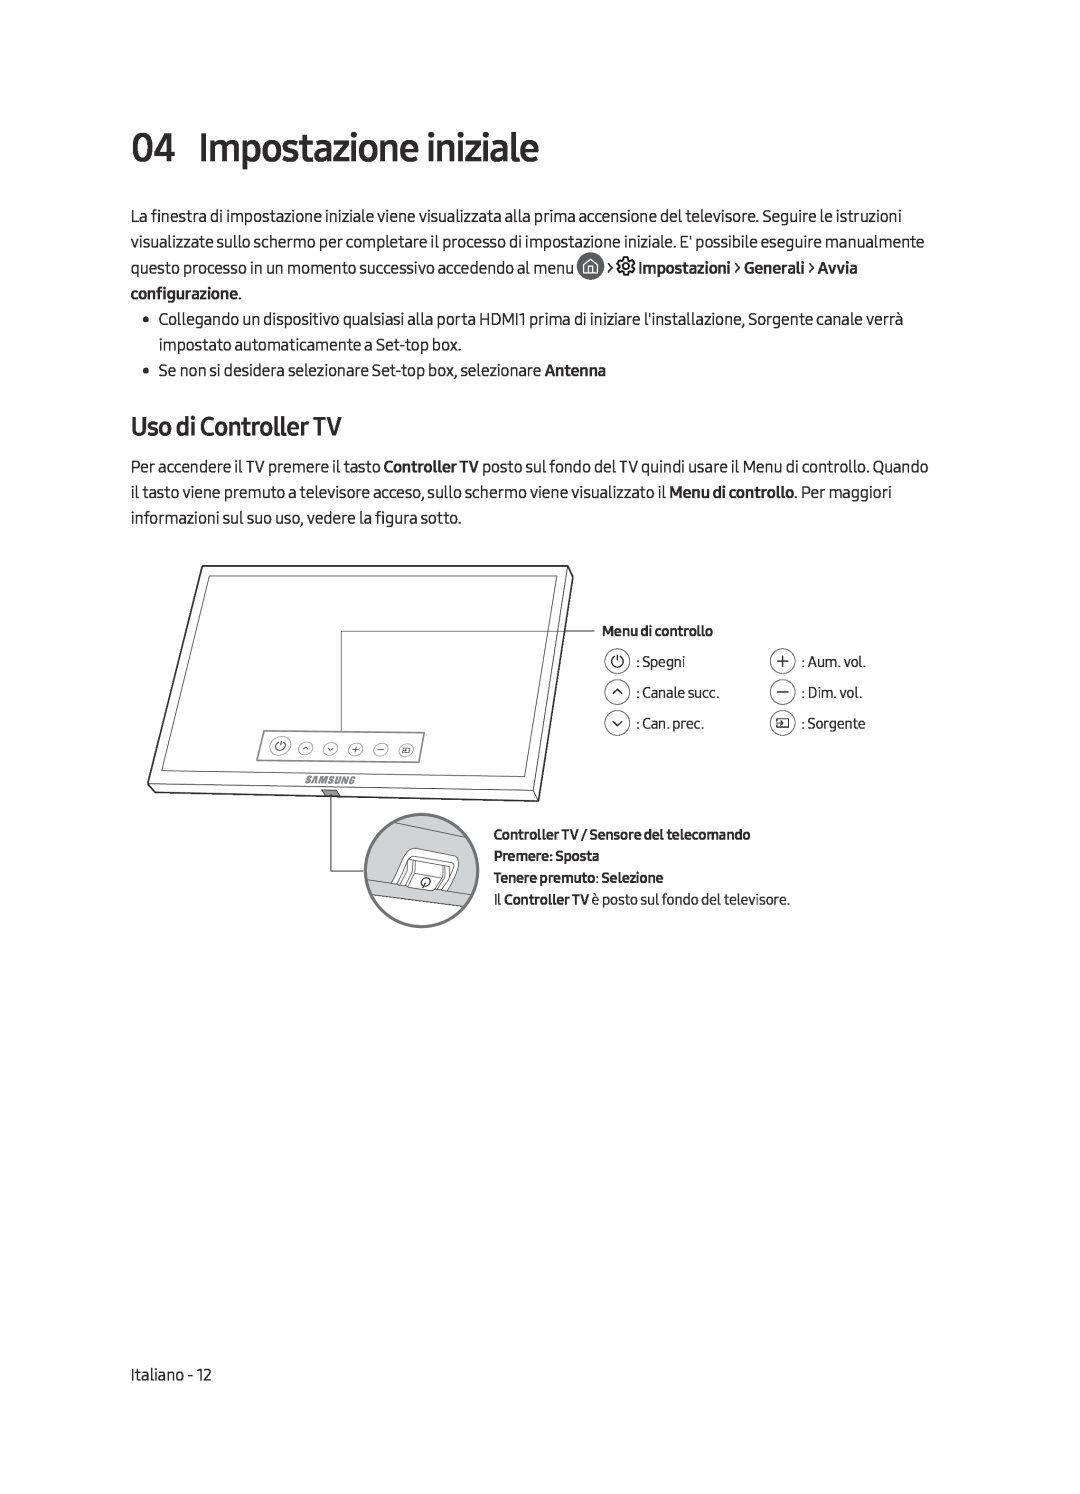 Samsung UE49MU9000TXXU, UE65MU9009TXZG, UE65MU9000TXZG, UE55MU9009TXZG manual Impostazione iniziale, Uso di Controller TV 